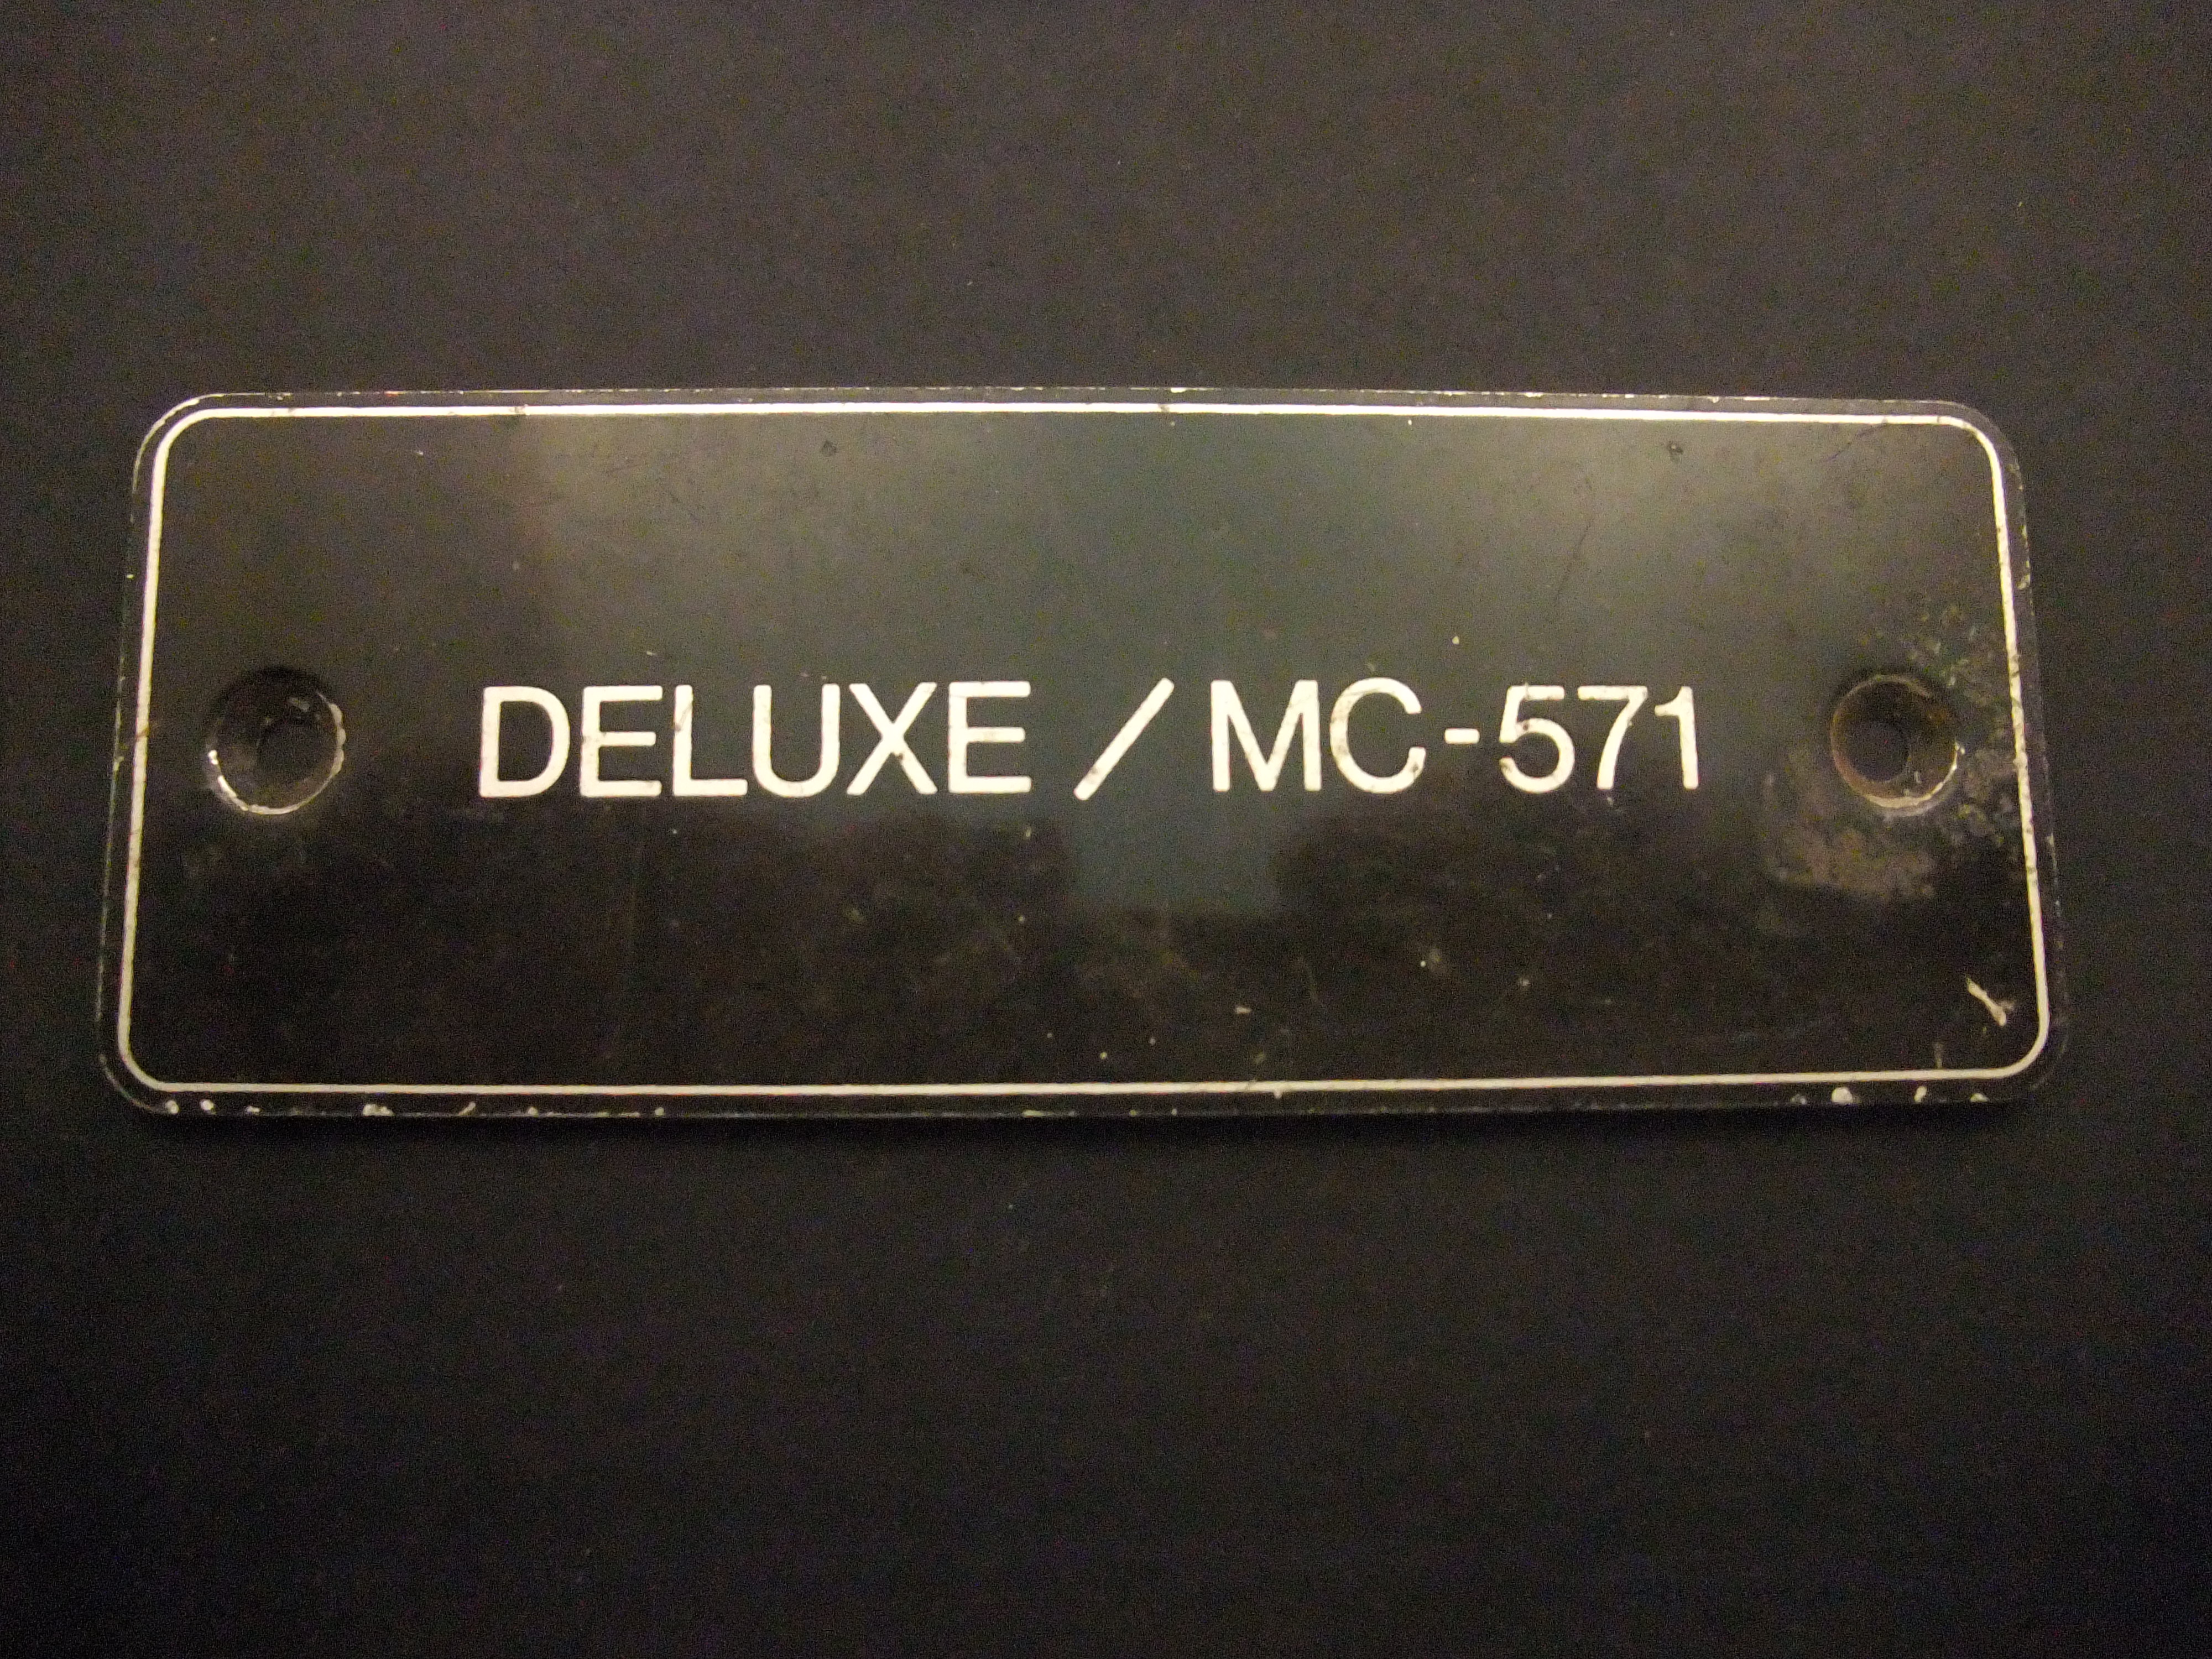 MC-571 Deluxe Panasonic stofzuigerzakken oud plaatje